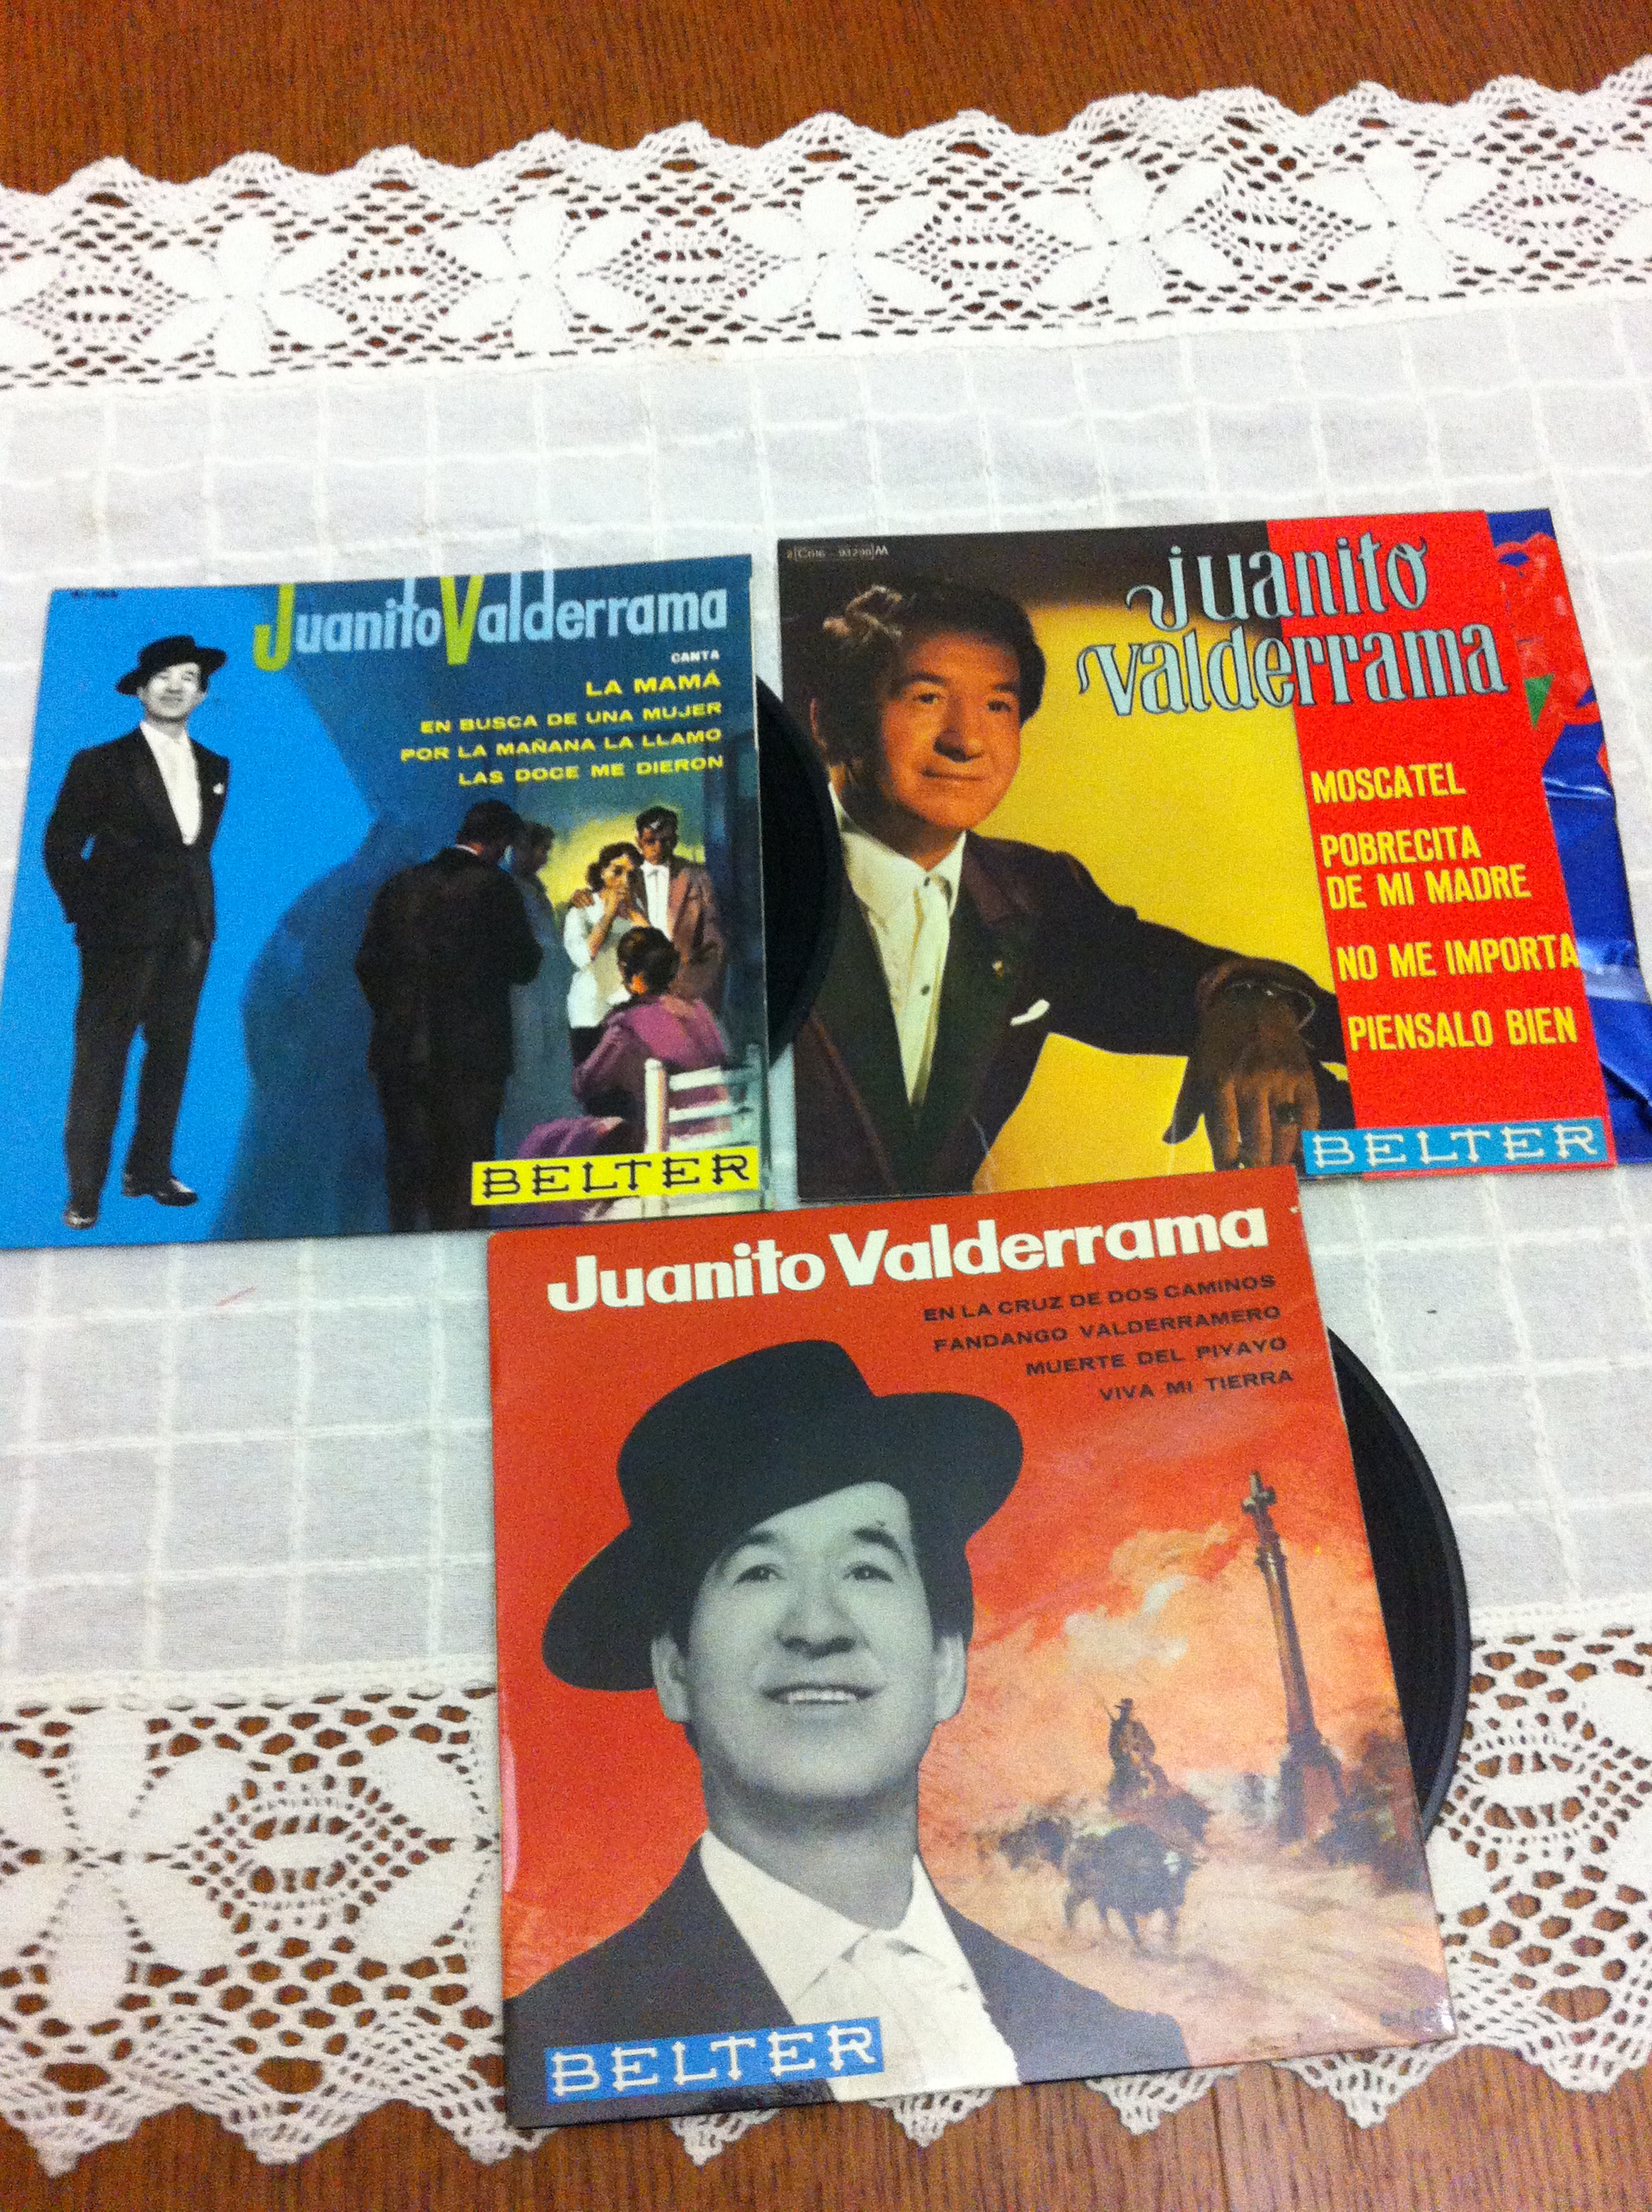 Flamenco cassette et disque vinyle   - Page 3 14022310044614950712010080